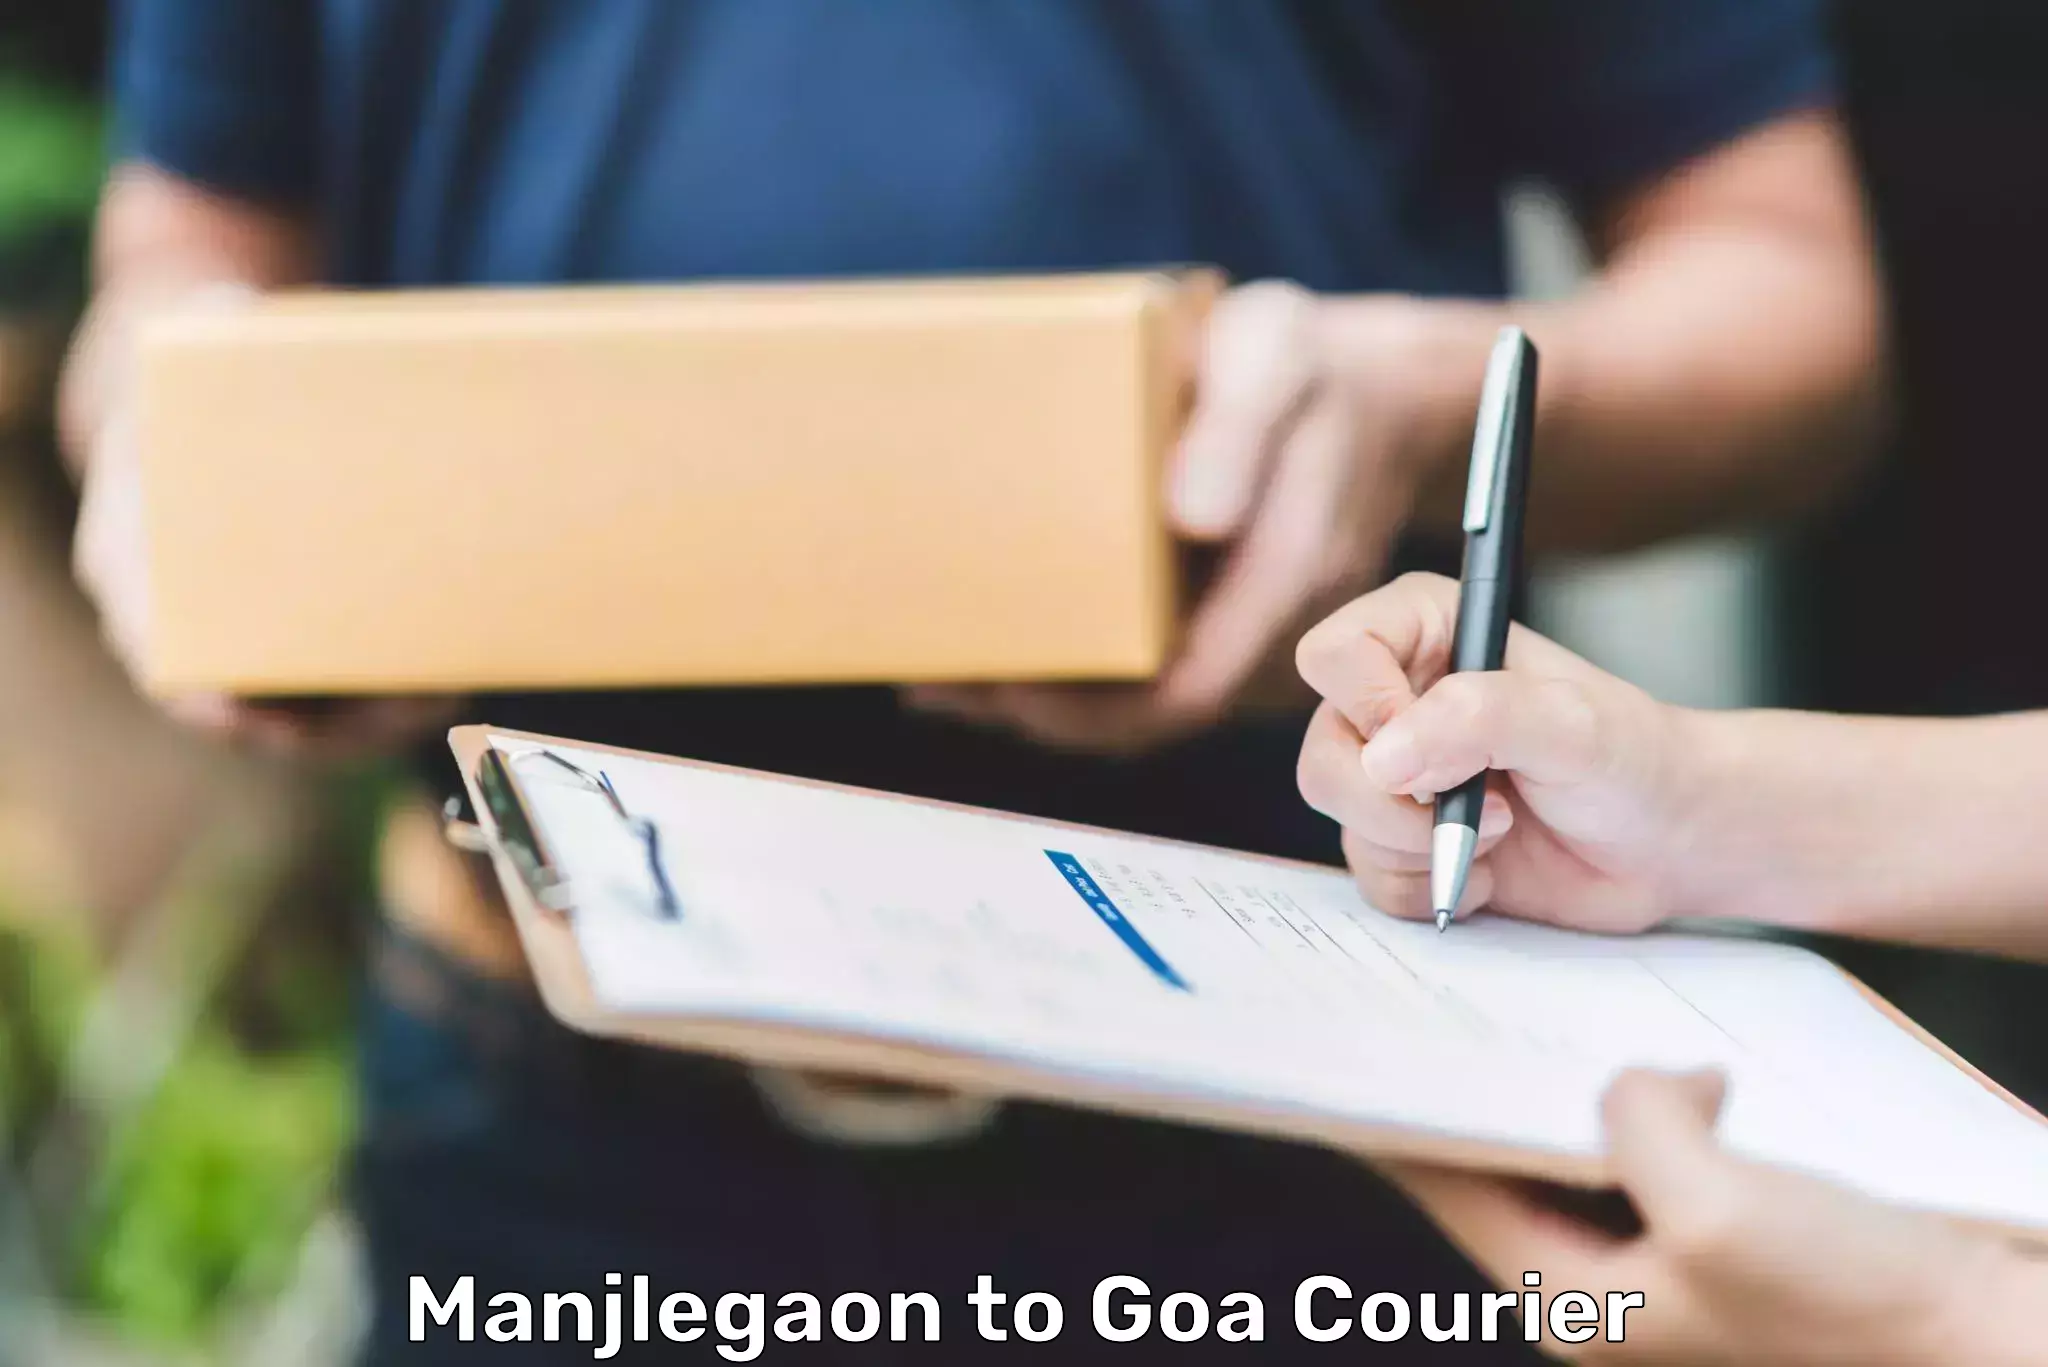 Domestic courier Manjlegaon to NIT Goa